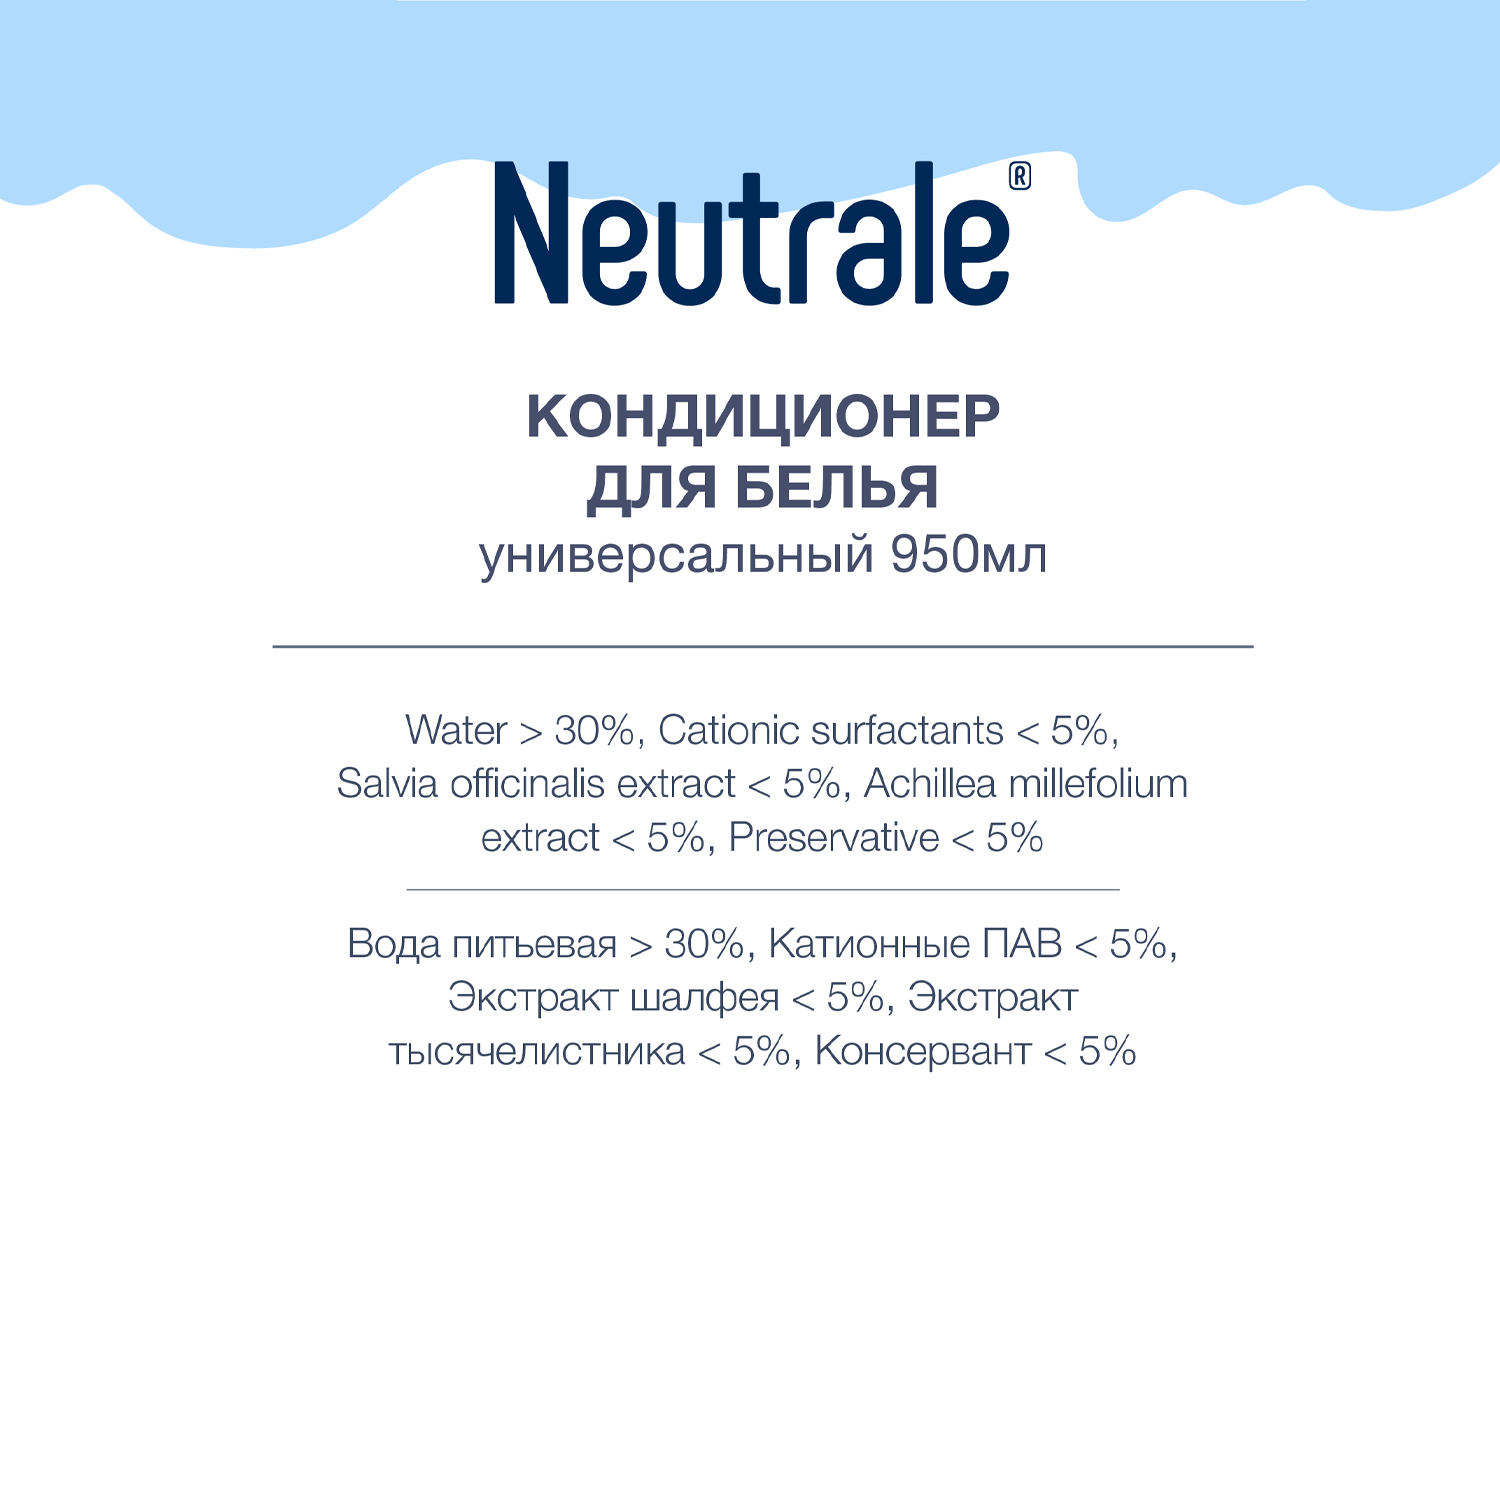 Кондиционер для белья Neutrale универсальный гипоаллергенный без запаха и фосфатов ЭКО 950мл - фото 3